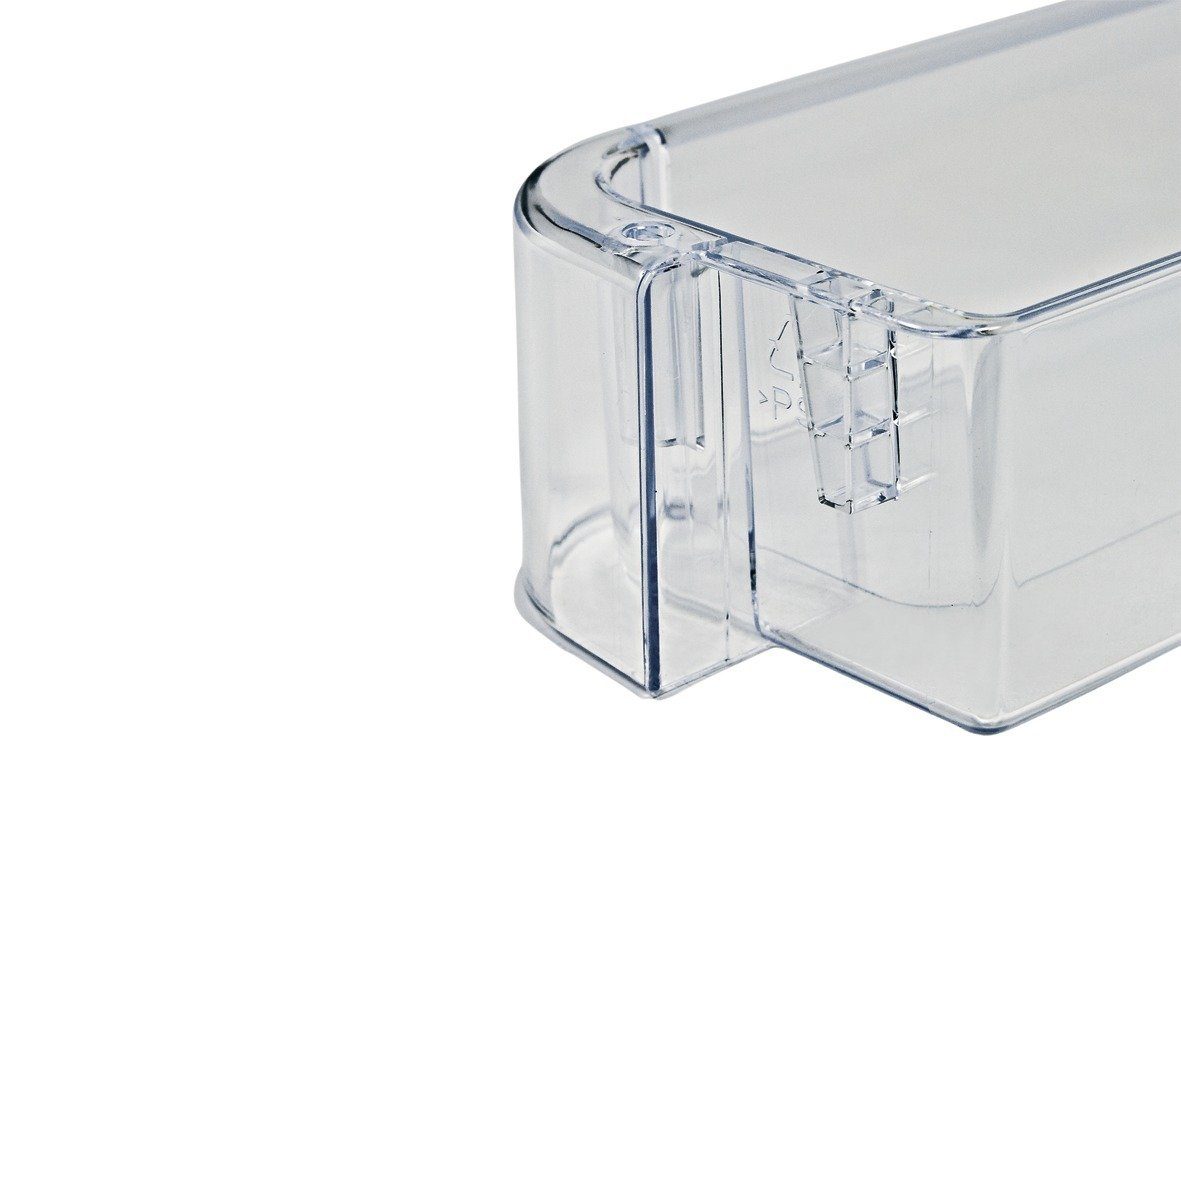 Fulgor easyPART für Gefrierschrank wie Zubehör Kühlschrank Flaschenablage Abstellfach, 481010471454 /